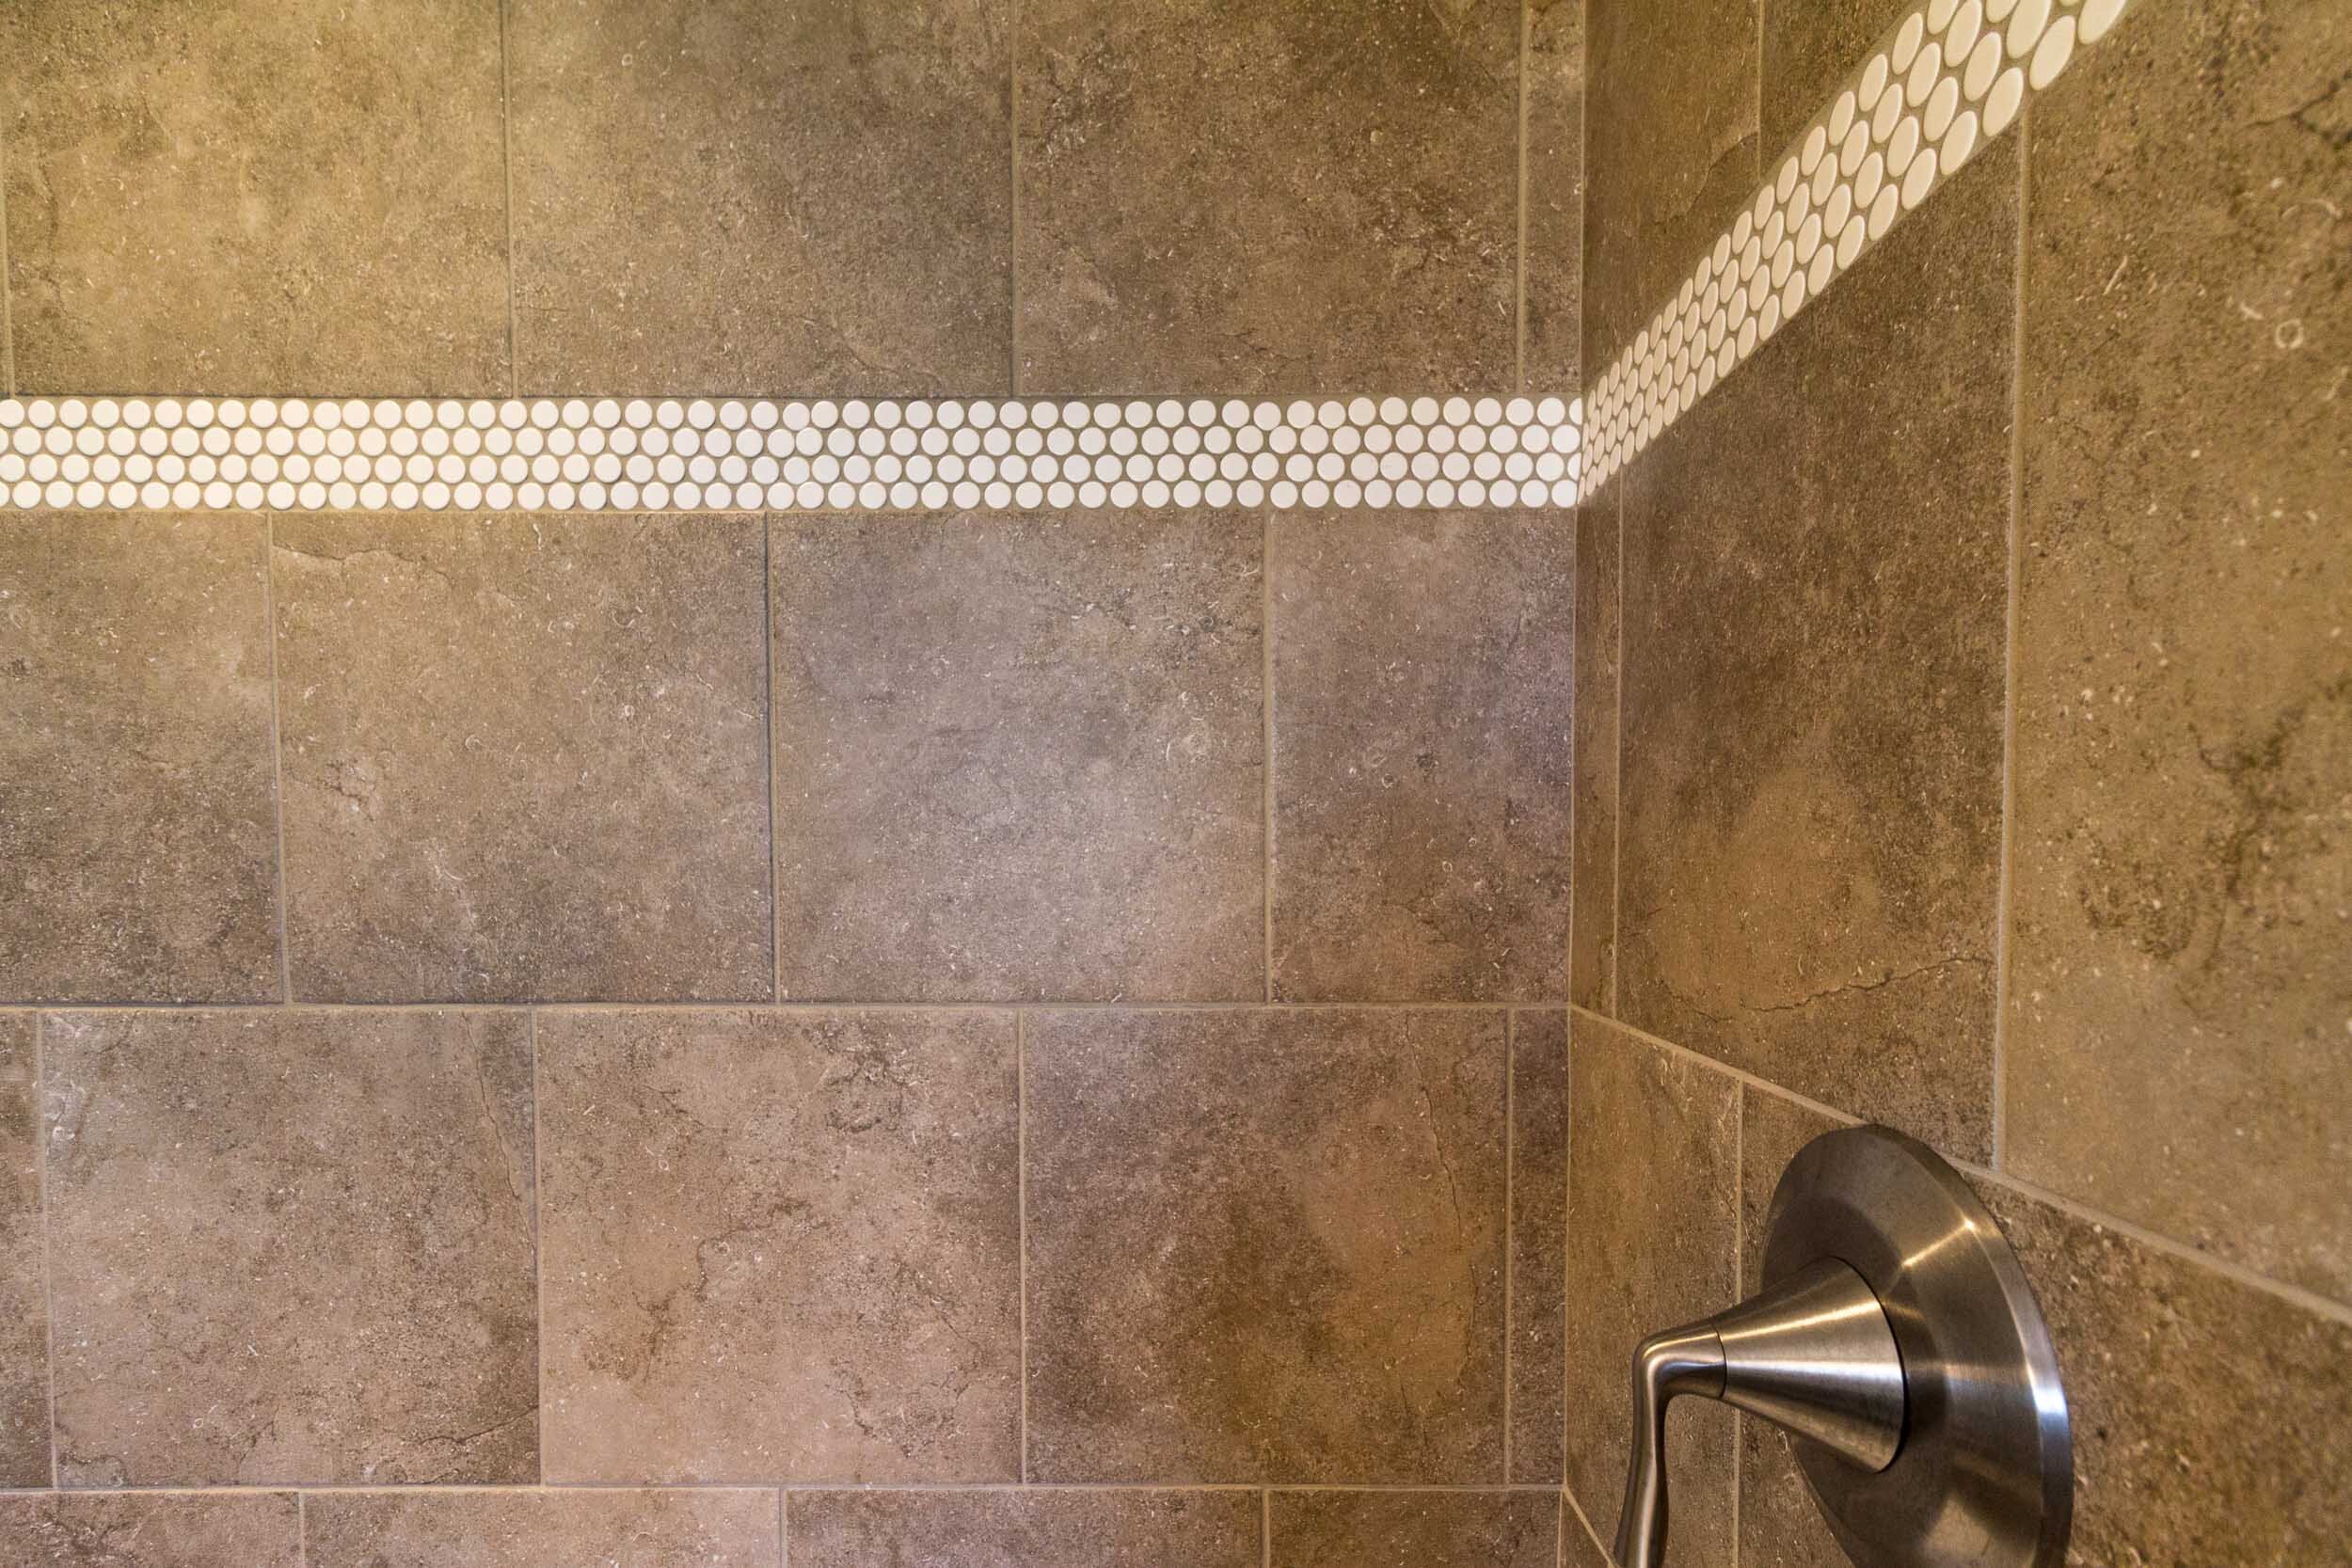 Large Format Tile In A Bathroom Remodel, Shower Remodel Tile Floor